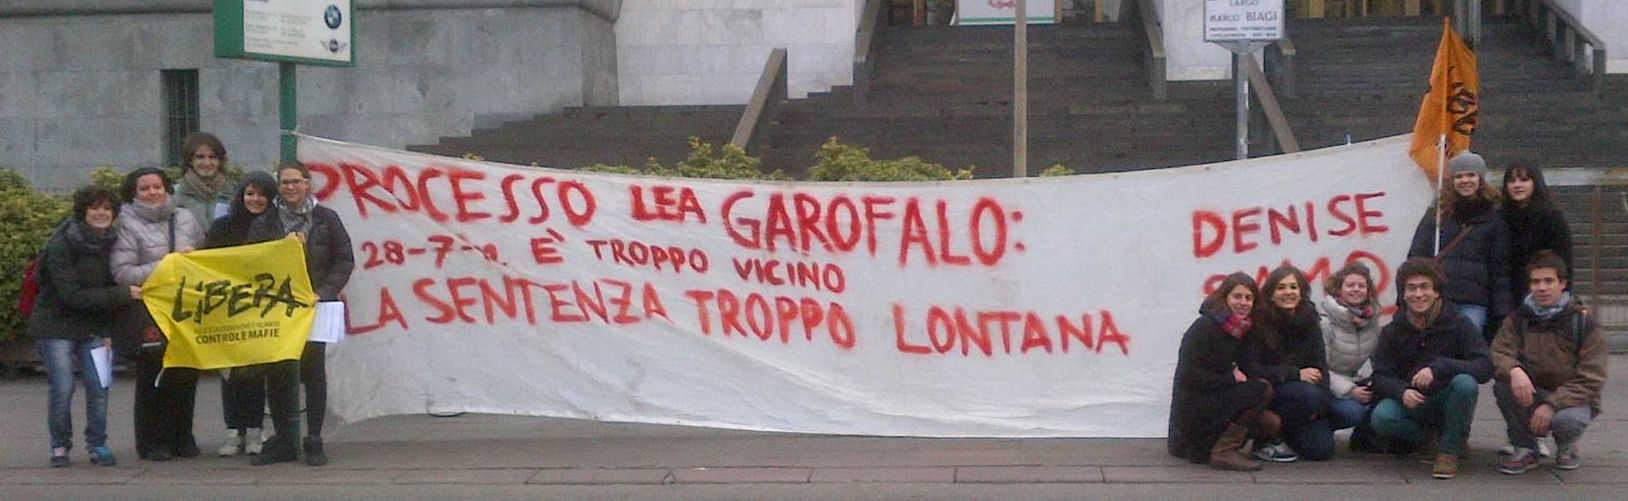 Lea Garofalo e i giovani, la mobilitazione che ha cambiato l’antimafia milanese